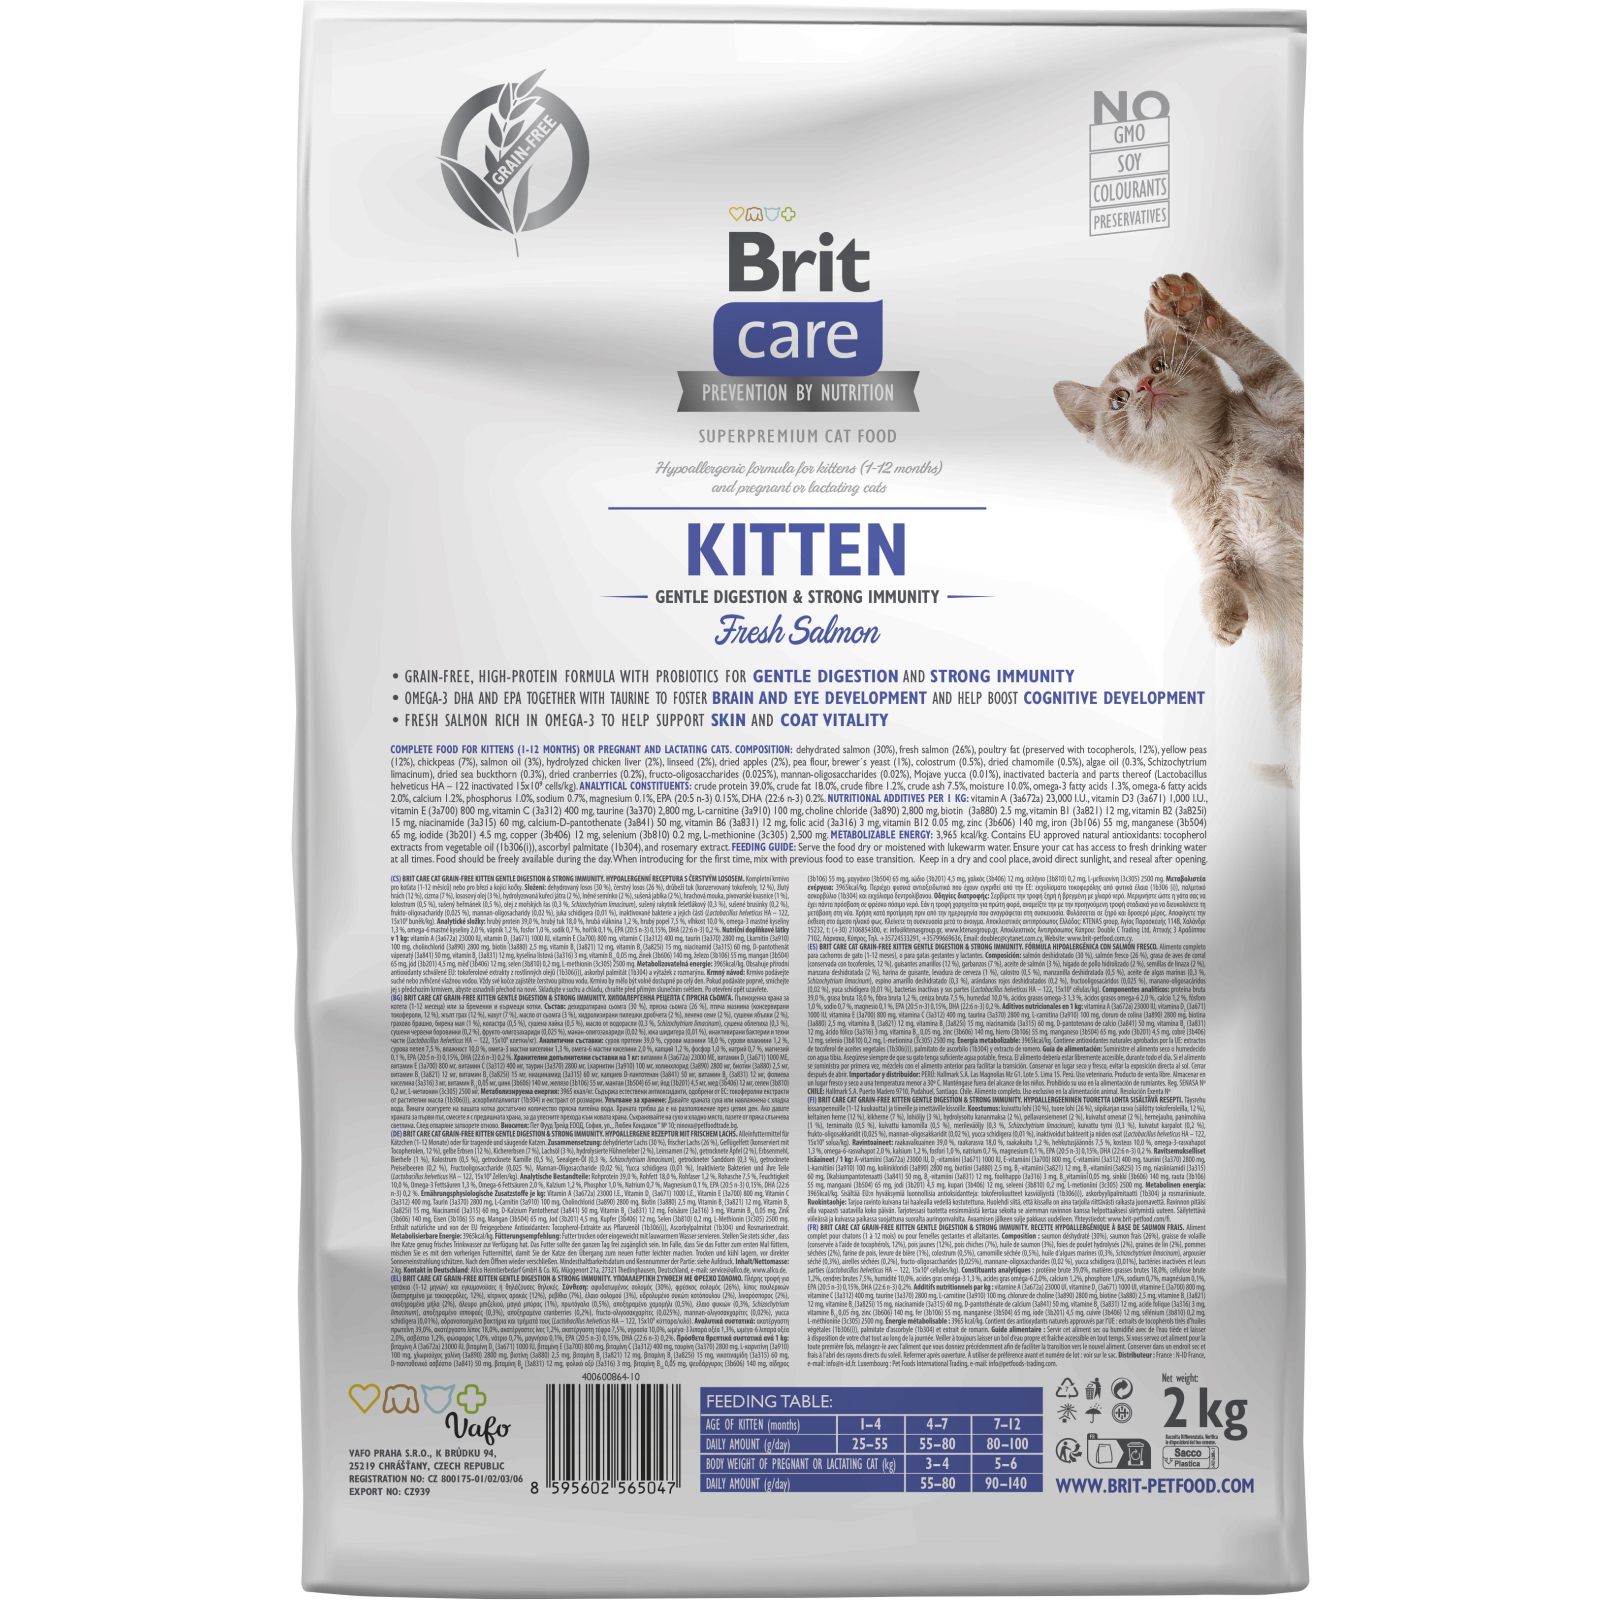 Сухой корм для кошек Brit Care Cat GF Kitten Gentle Digestion Strong Immunity с лососем 400 г (8595602565030) изображение 2